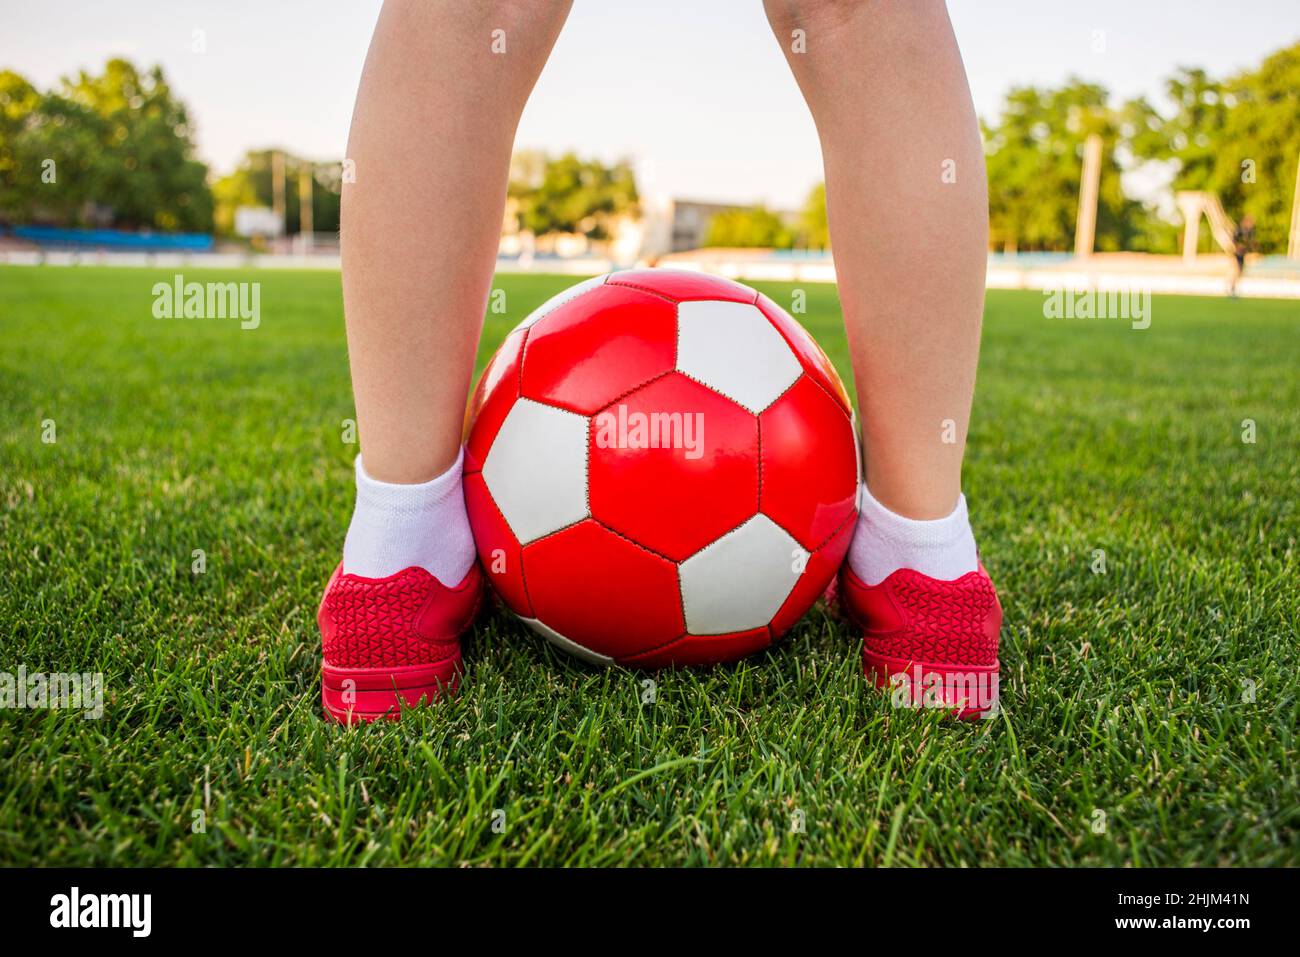 Ein Junge steht auf dem Fußballfeld eines Stadions mit einem Fußball zwischen seinen Beinen. Kinder spielen Fußball auf dem Rasen. Schulung oder Wettbewerb konz Stockfoto